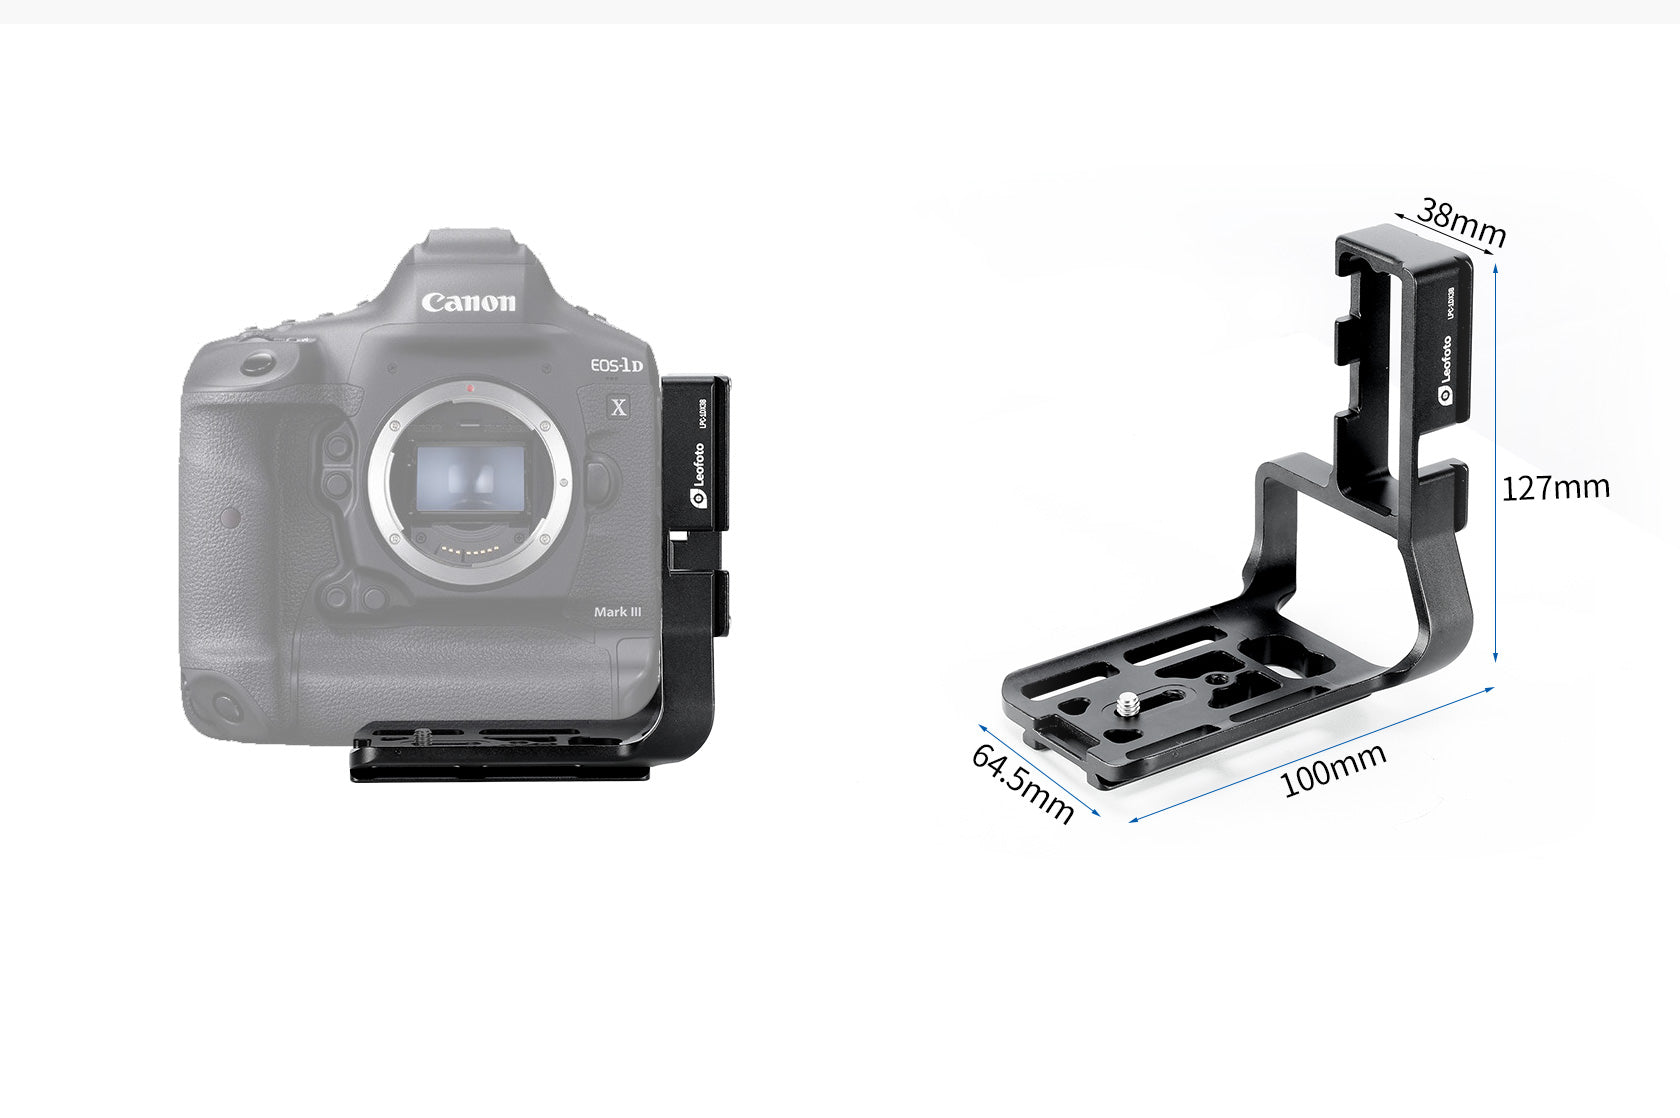 Leofoto LPC-1DX3B L Plate for Canon EOS-1D X Mark III | Arca Compatible